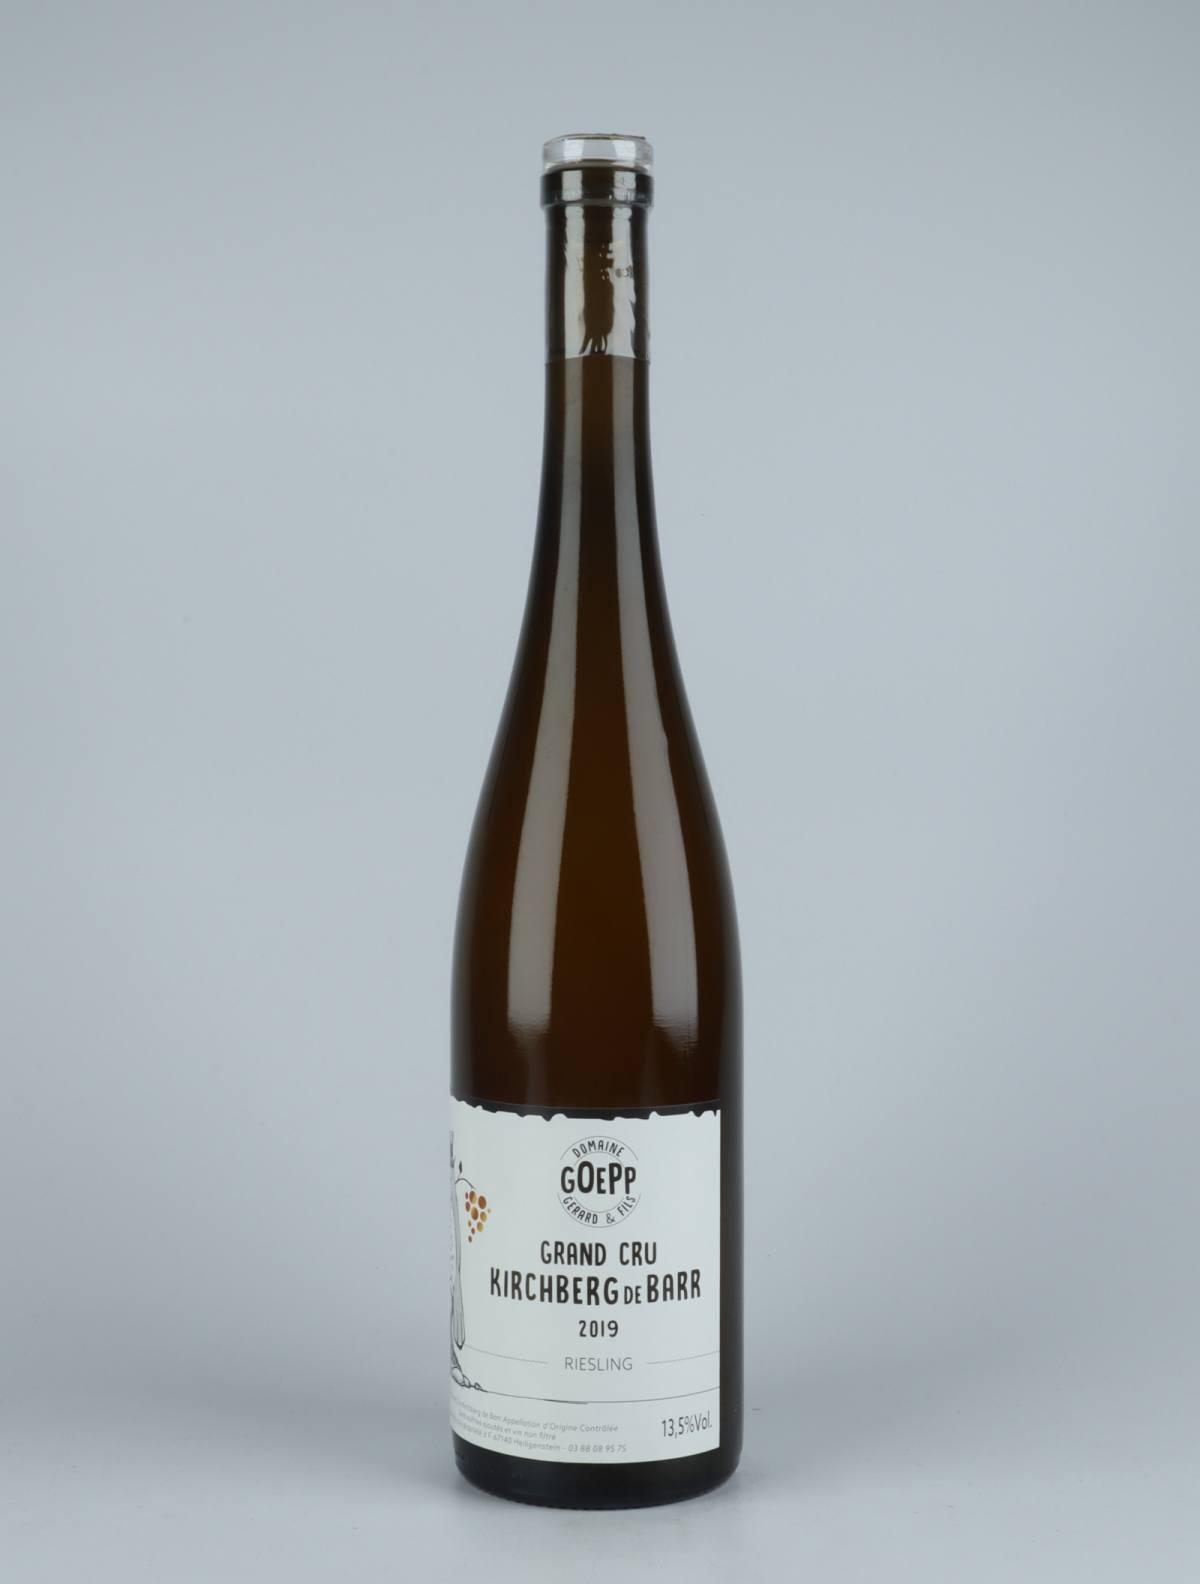 En flaske 2019 Riesling - Grand Cru Kirchberg Hvidvin fra Domaine Goepp, Alsace i Frankrig